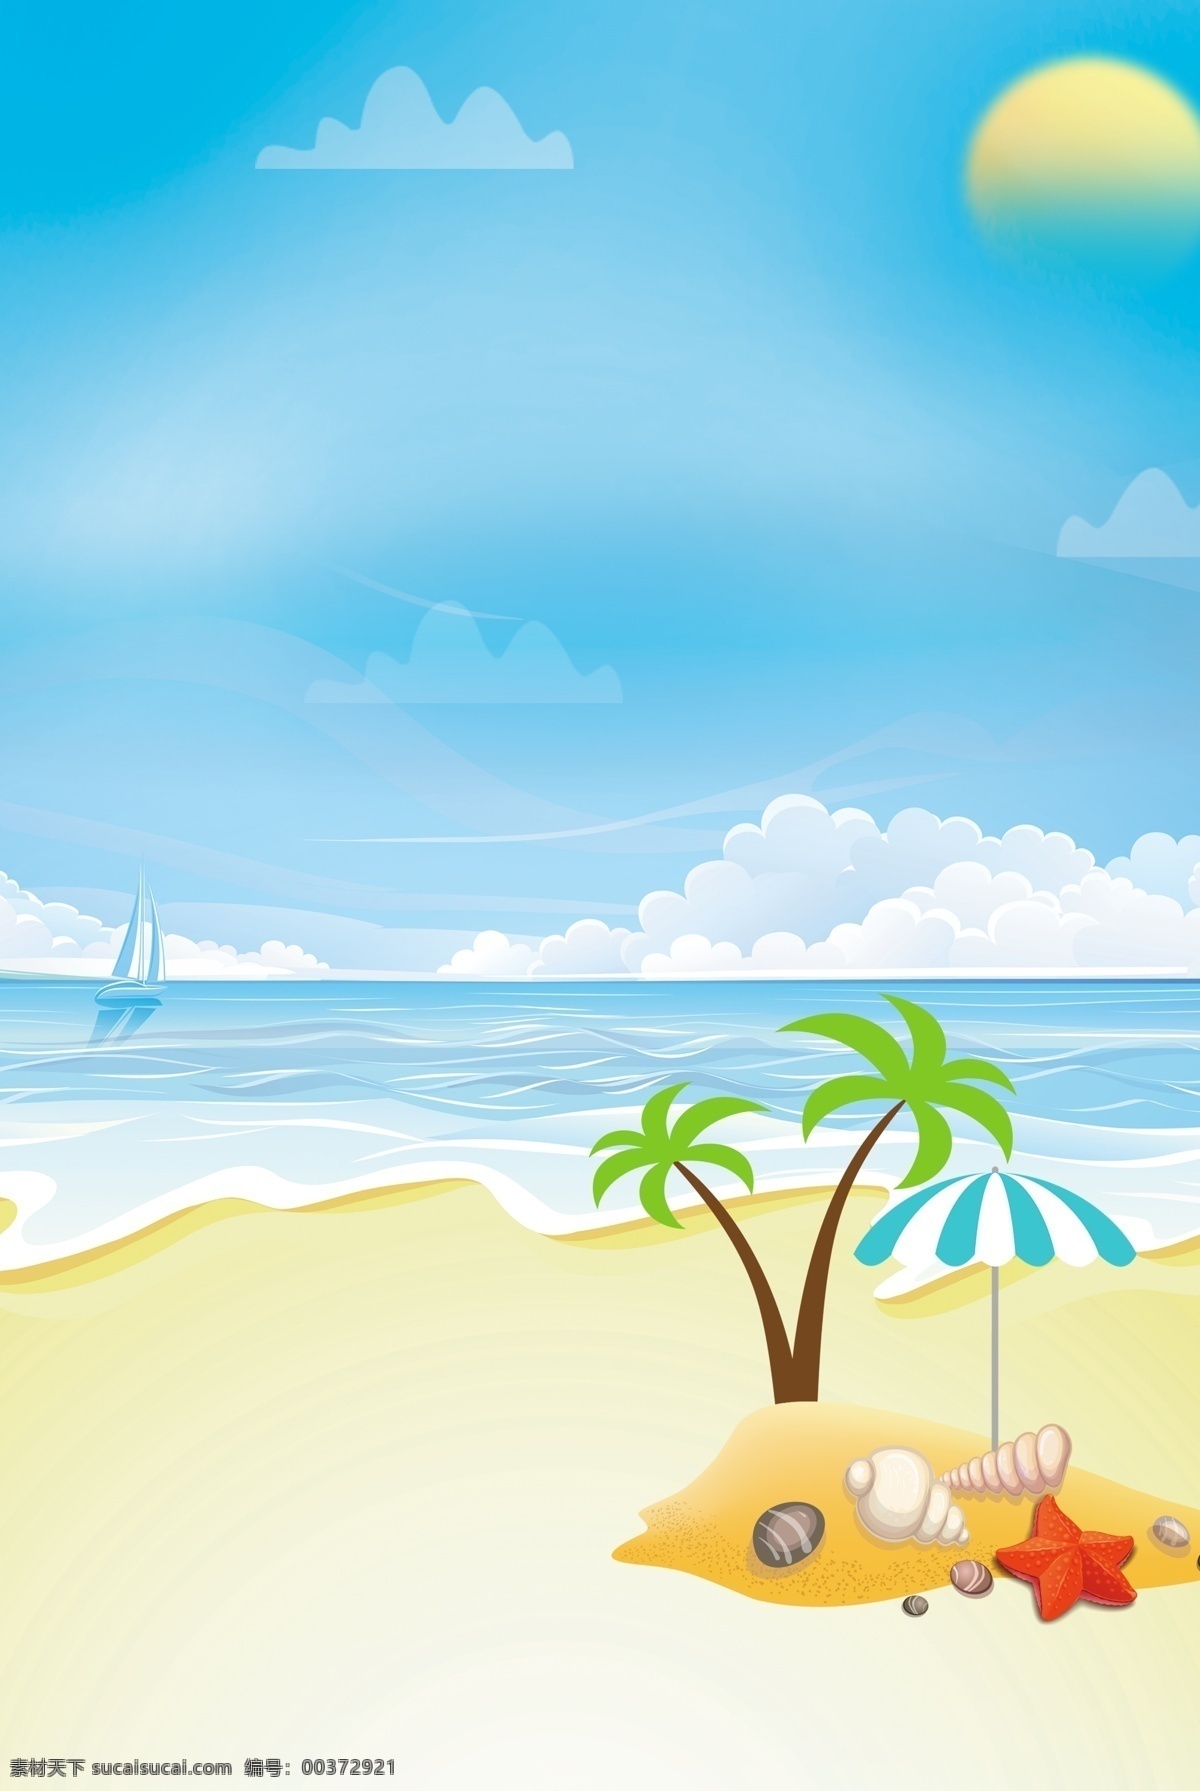 夏天海滩背景 大海 海滩 椰子树 蓝天 清新背景 蓝色背景